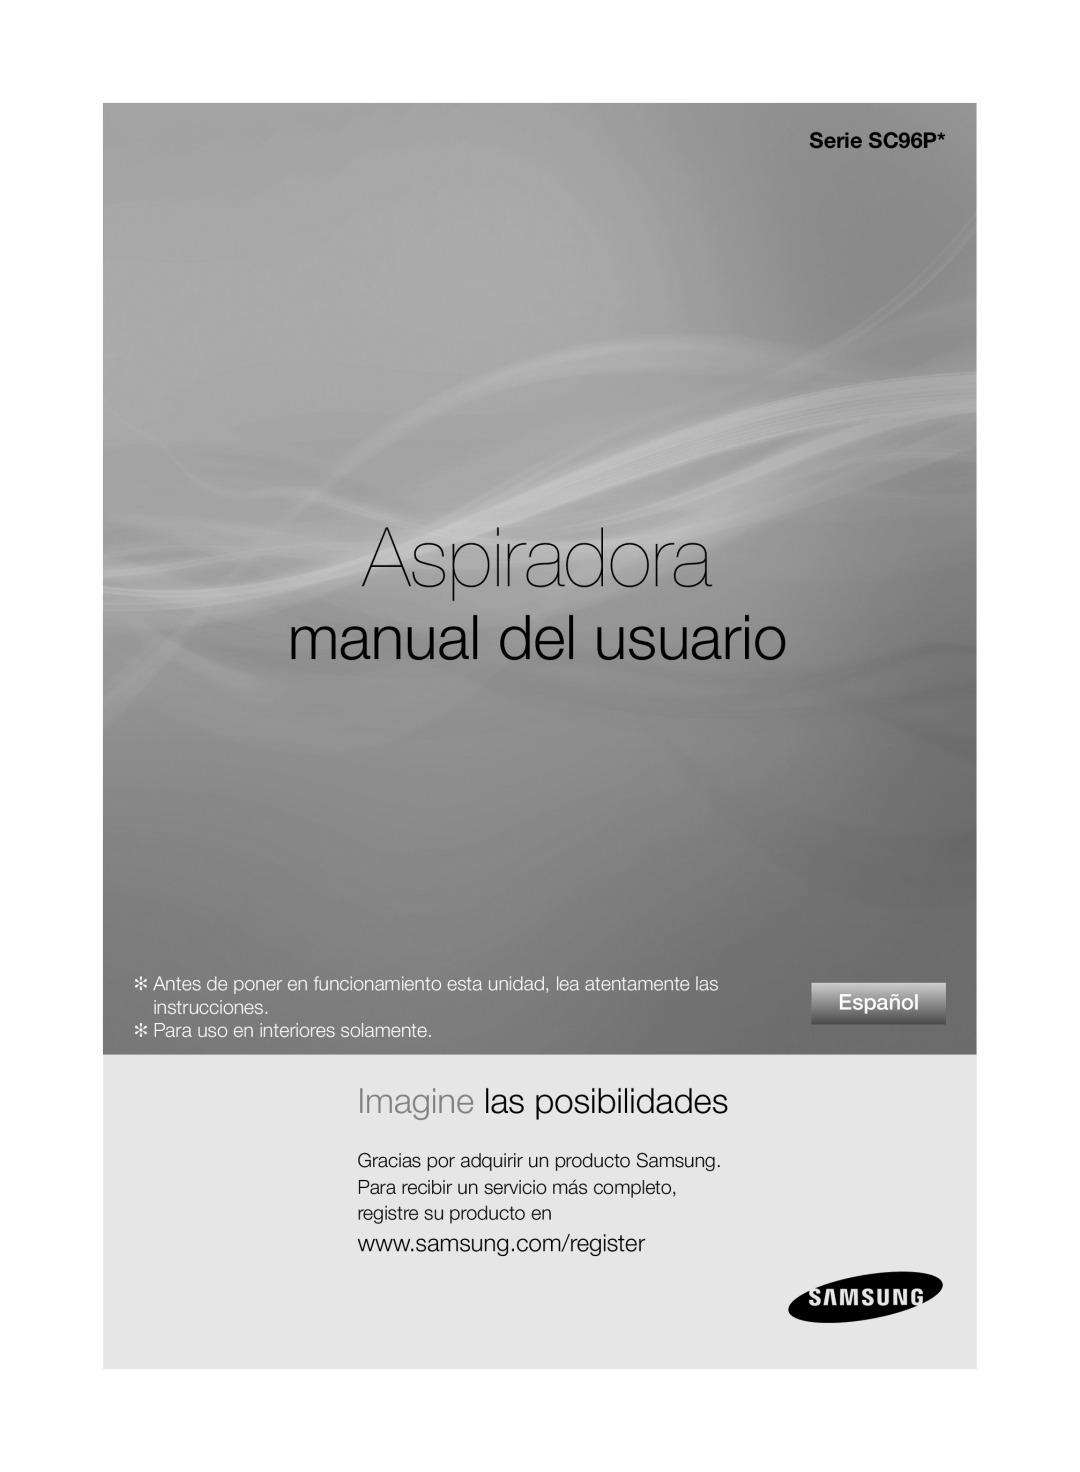 Samsung VCC96P0H1G Aspiradora, manual del usuario, Imagine las posibilidades, Serie SC96P, Español, instrucciones 